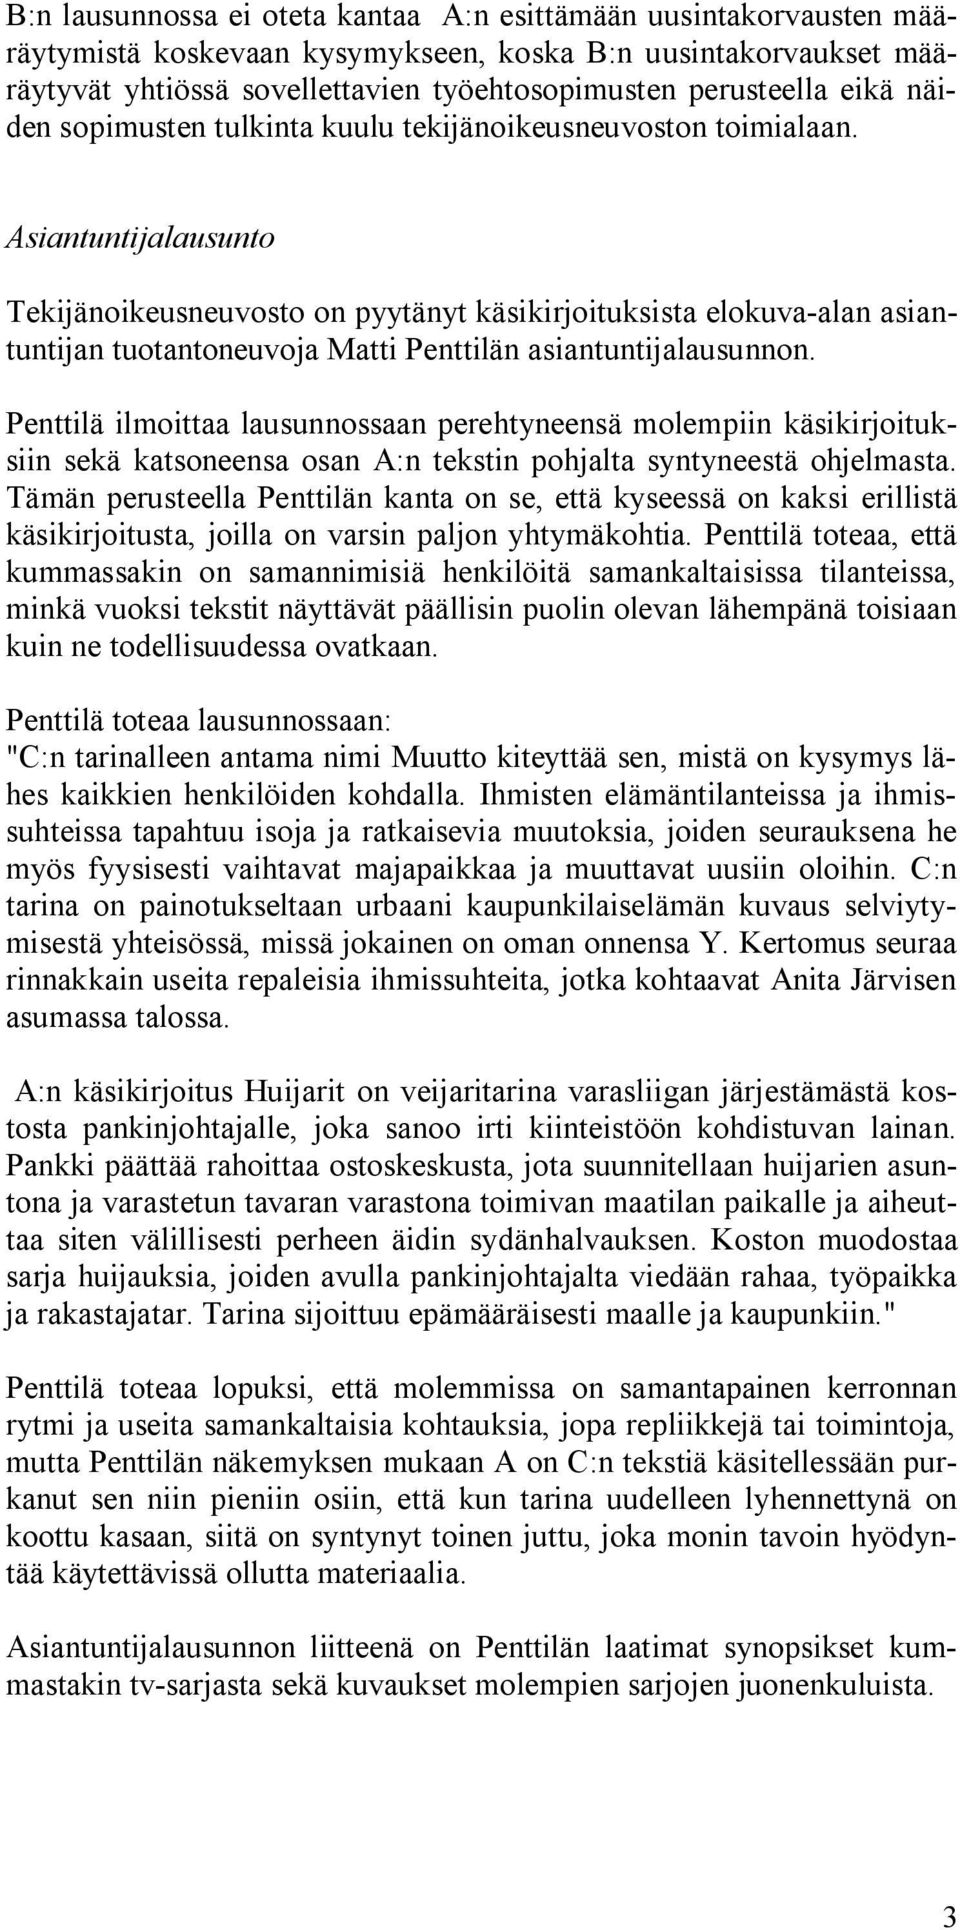 Asiantuntijalausunto Tekijänoikeusneuvosto on pyytänyt käsikirjoituksista elokuva-alan asiantuntijan tuotantoneuvoja Matti Penttilän asiantuntijalausunnon.